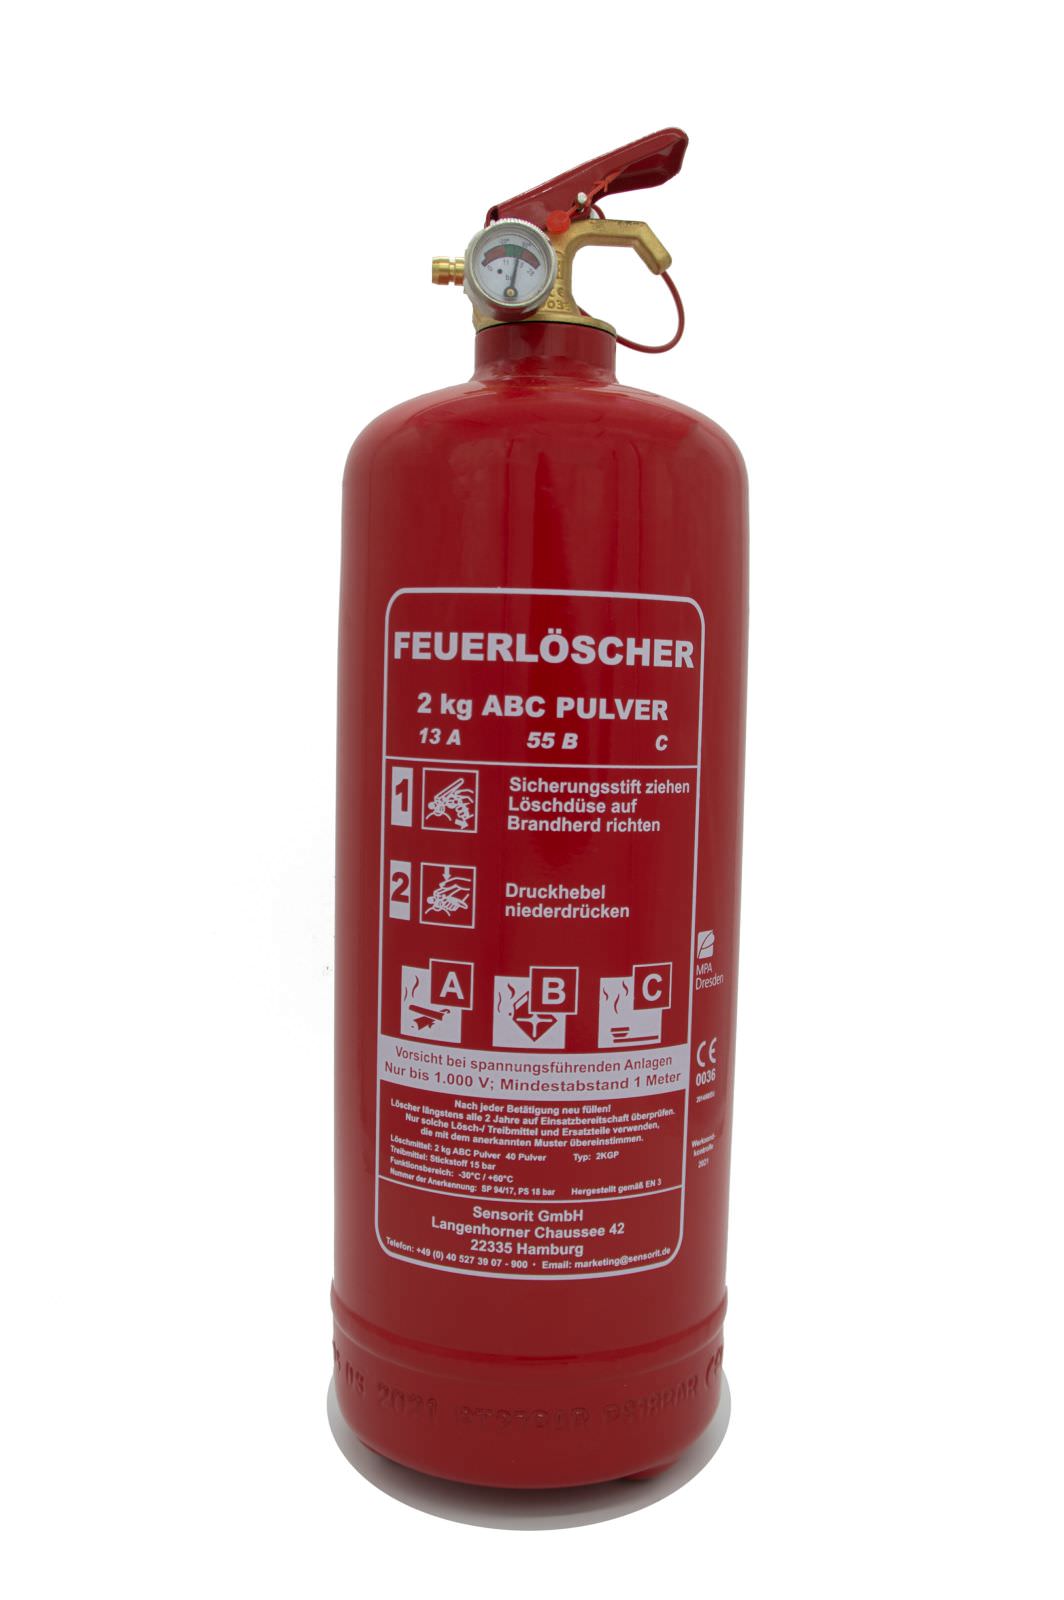 KFZ-Löscher - 2kg Pulver, Hainz Brandschutz GmbH, Feuerwehrbedarf